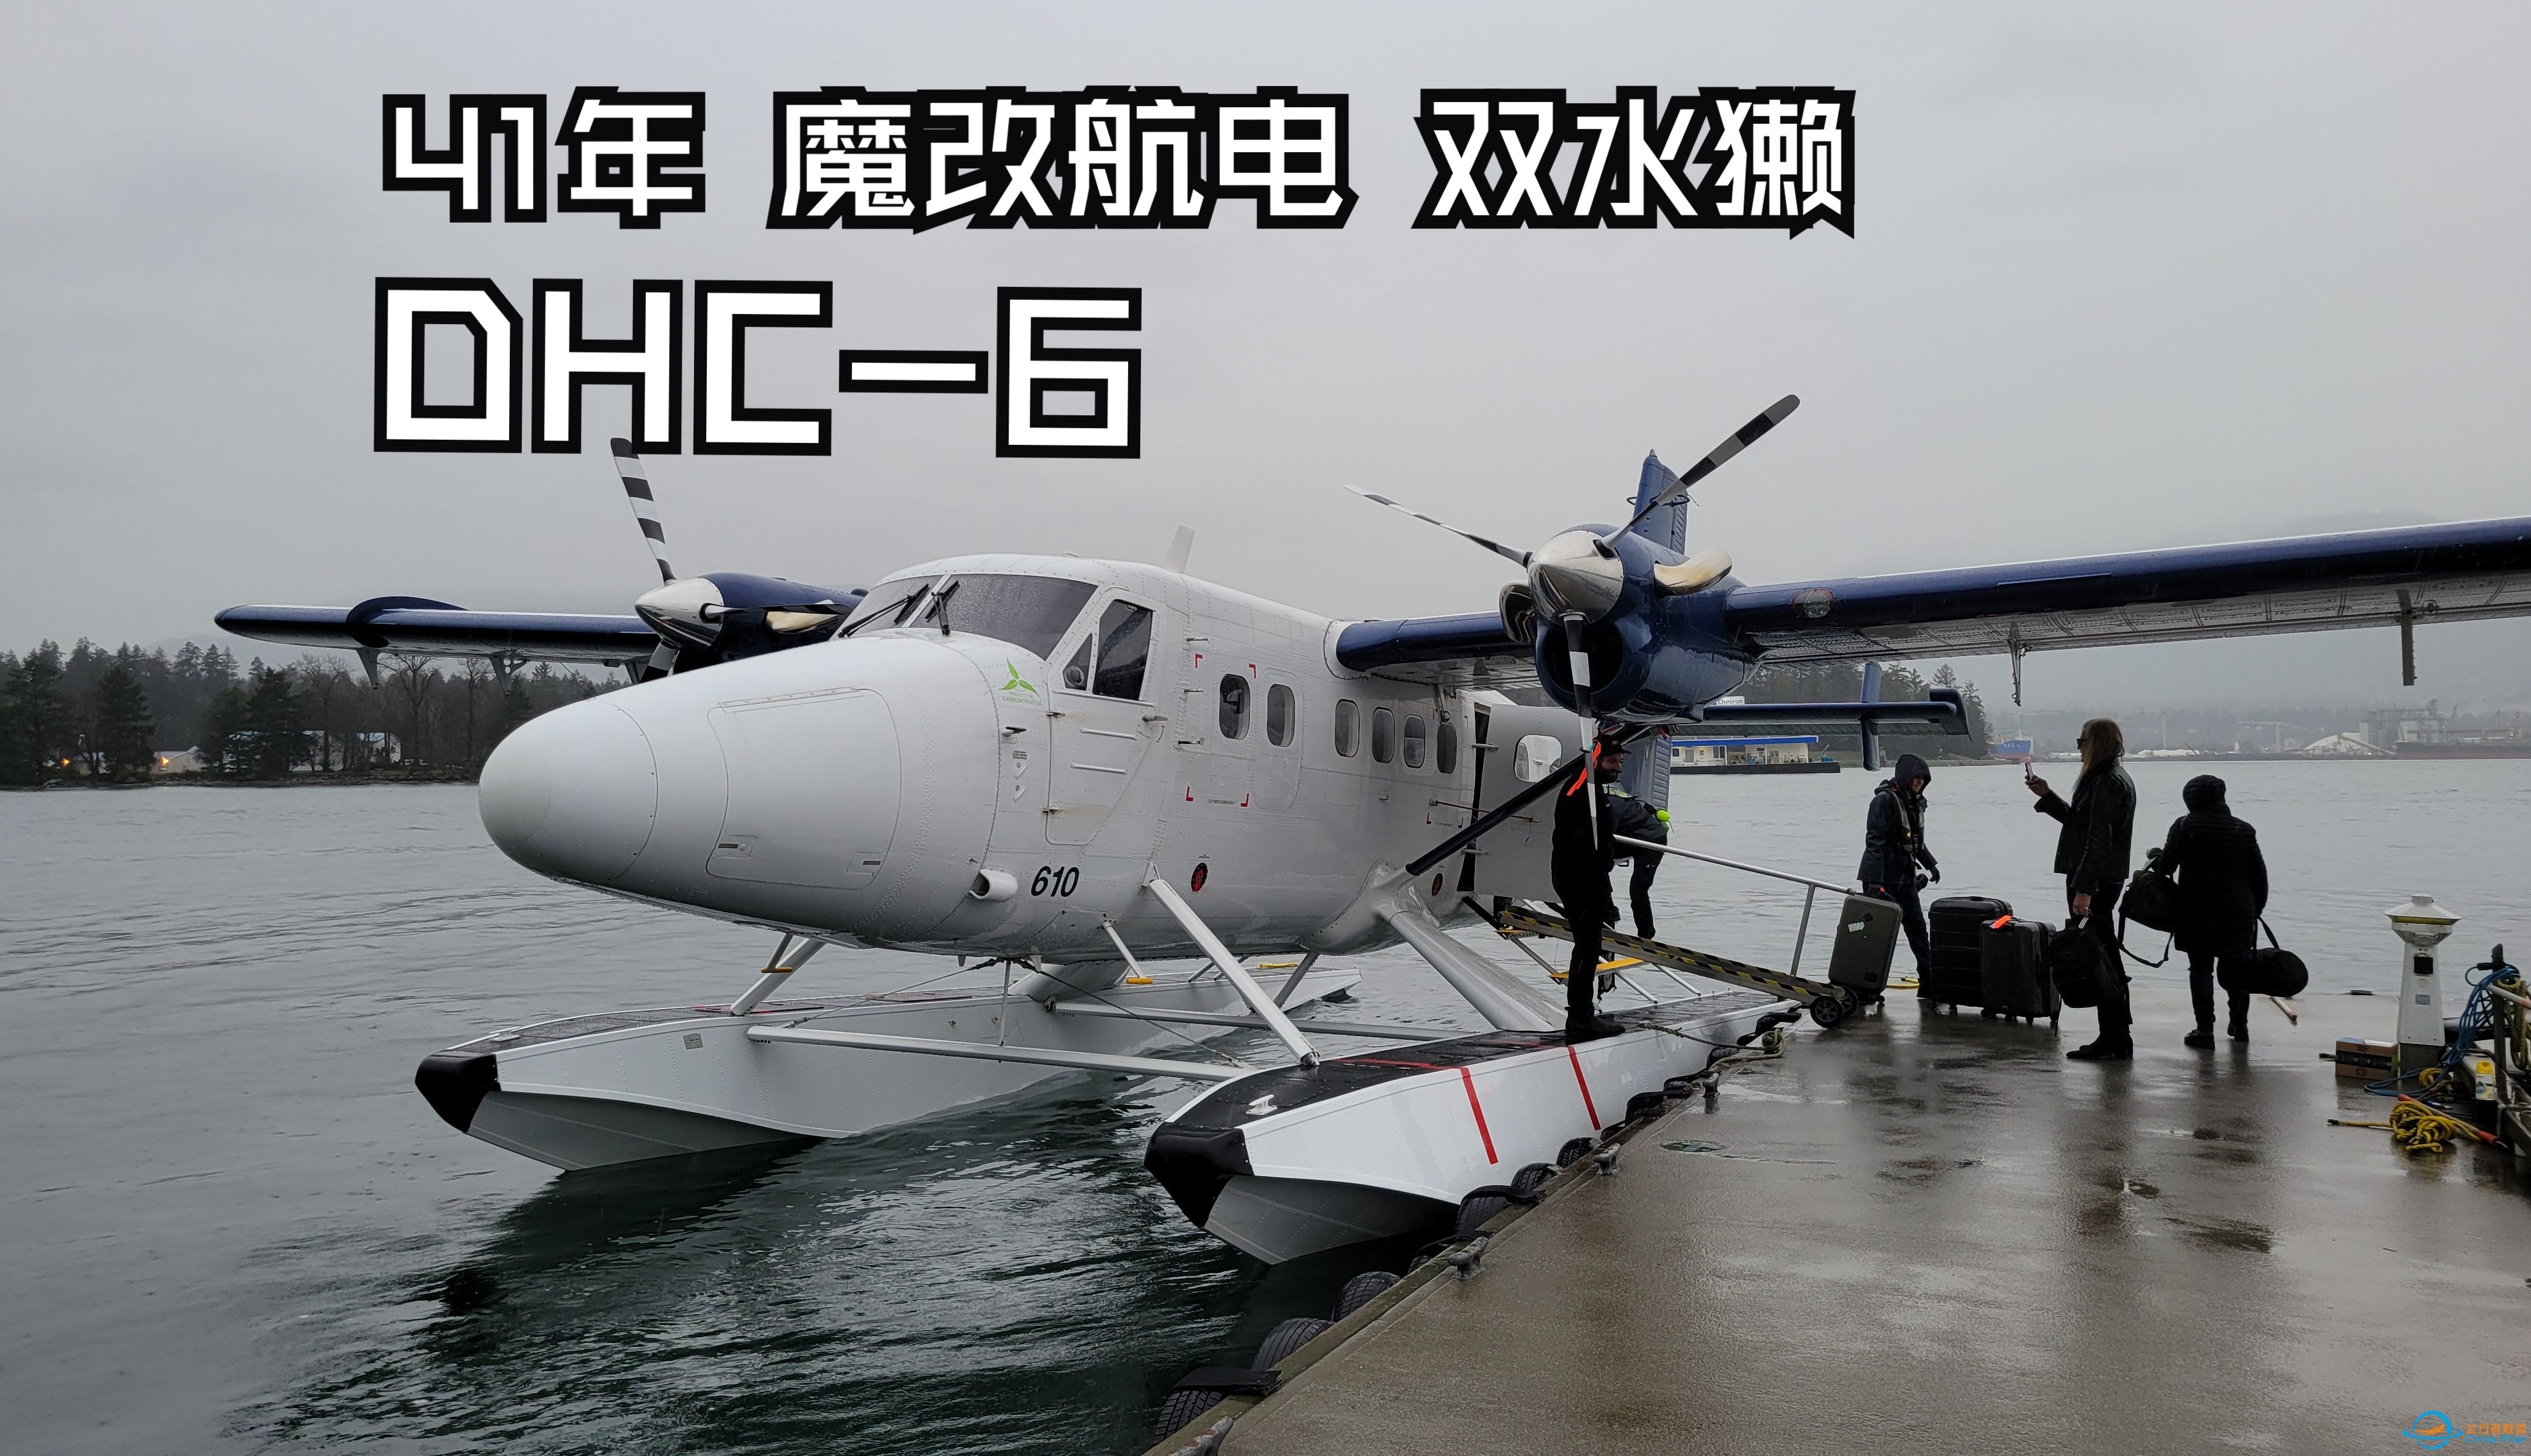 【飞行游记】41年的魔改老飞机？海港航空DHC-6双水獭水上飞机飞行体验-731 